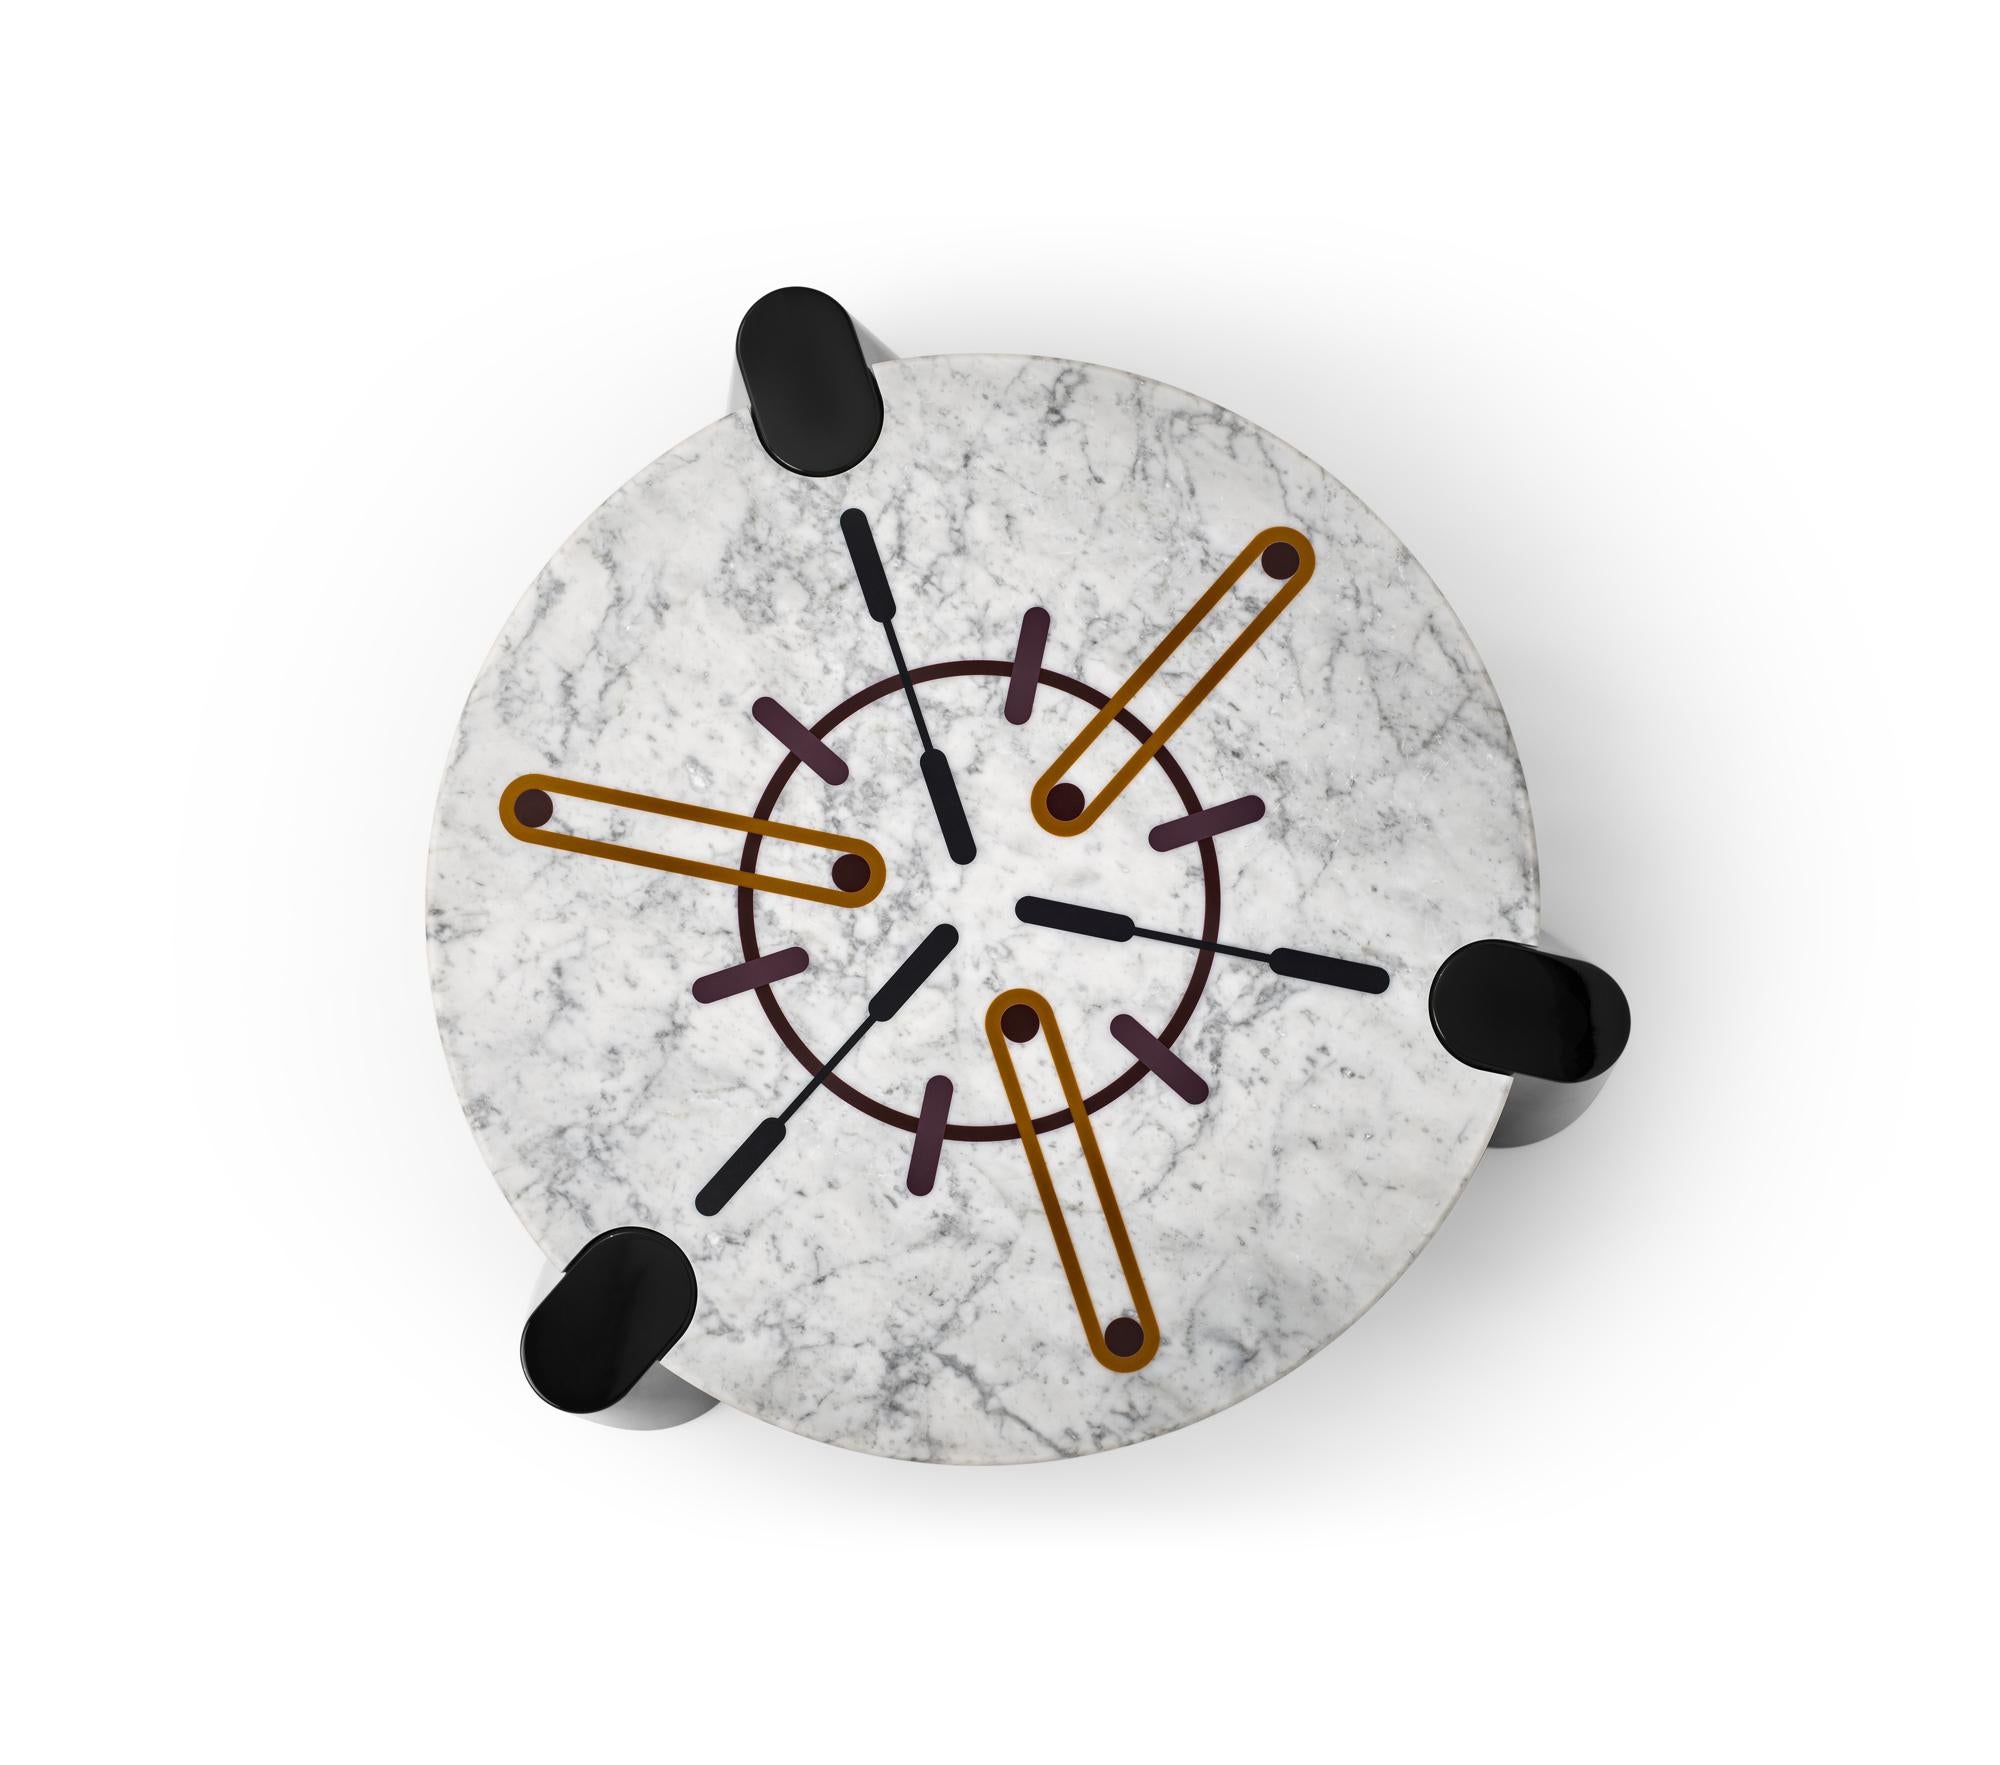 Nuclide Couchtisch Design von Elena Salmistraro, Produkt von Scapin Collezioni

Klare Linien, scharfe Grafiken und großzügige Volumen. Die Ausdruckskraft der Tischplatte wird mit einer starken dreidimensionalen Unterstützung